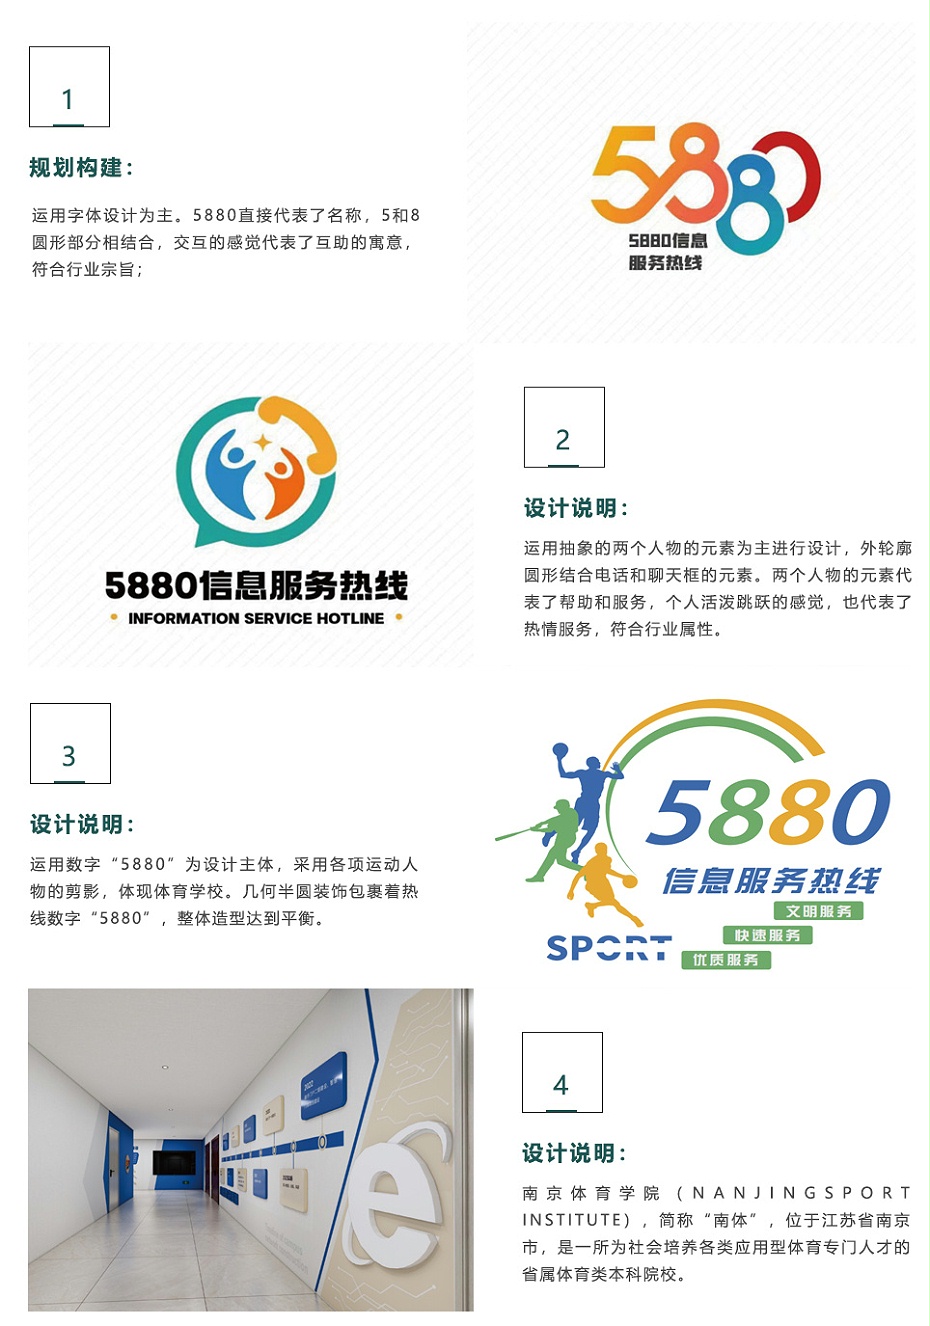 南京体育学院信息中心形象建设提案